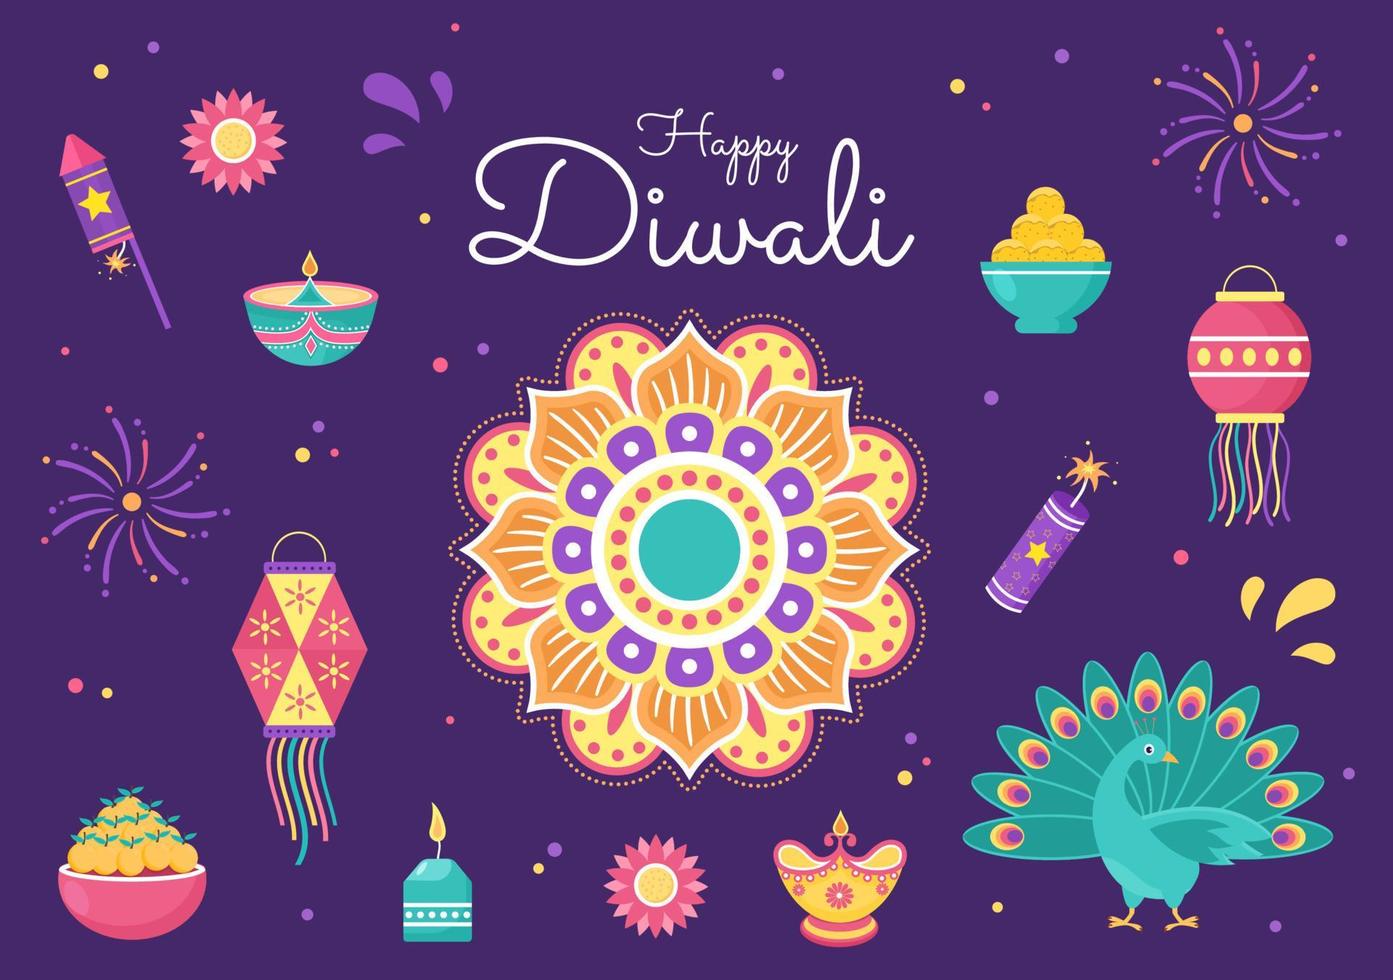 indiano che celebra l'illustrazione di vettore del fondo del giorno di diwali